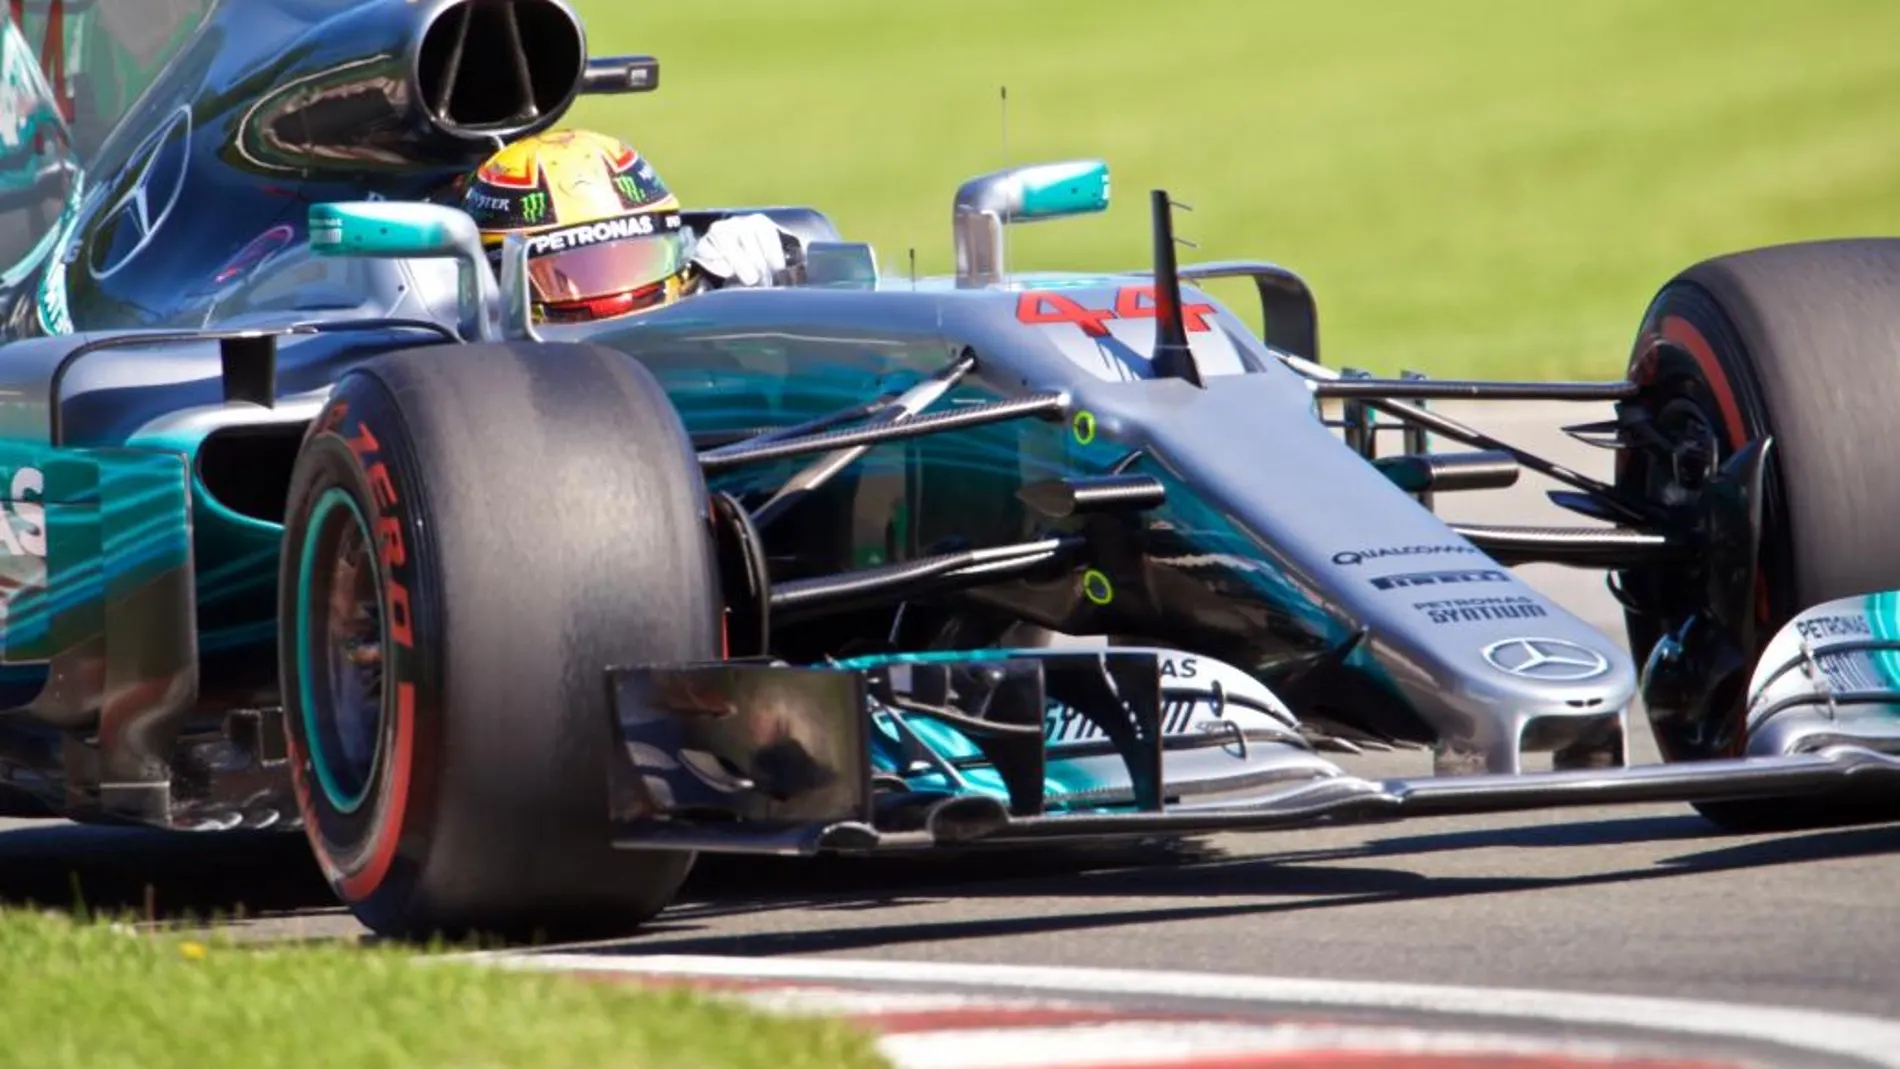 El piloto británico Lewis Hamilton